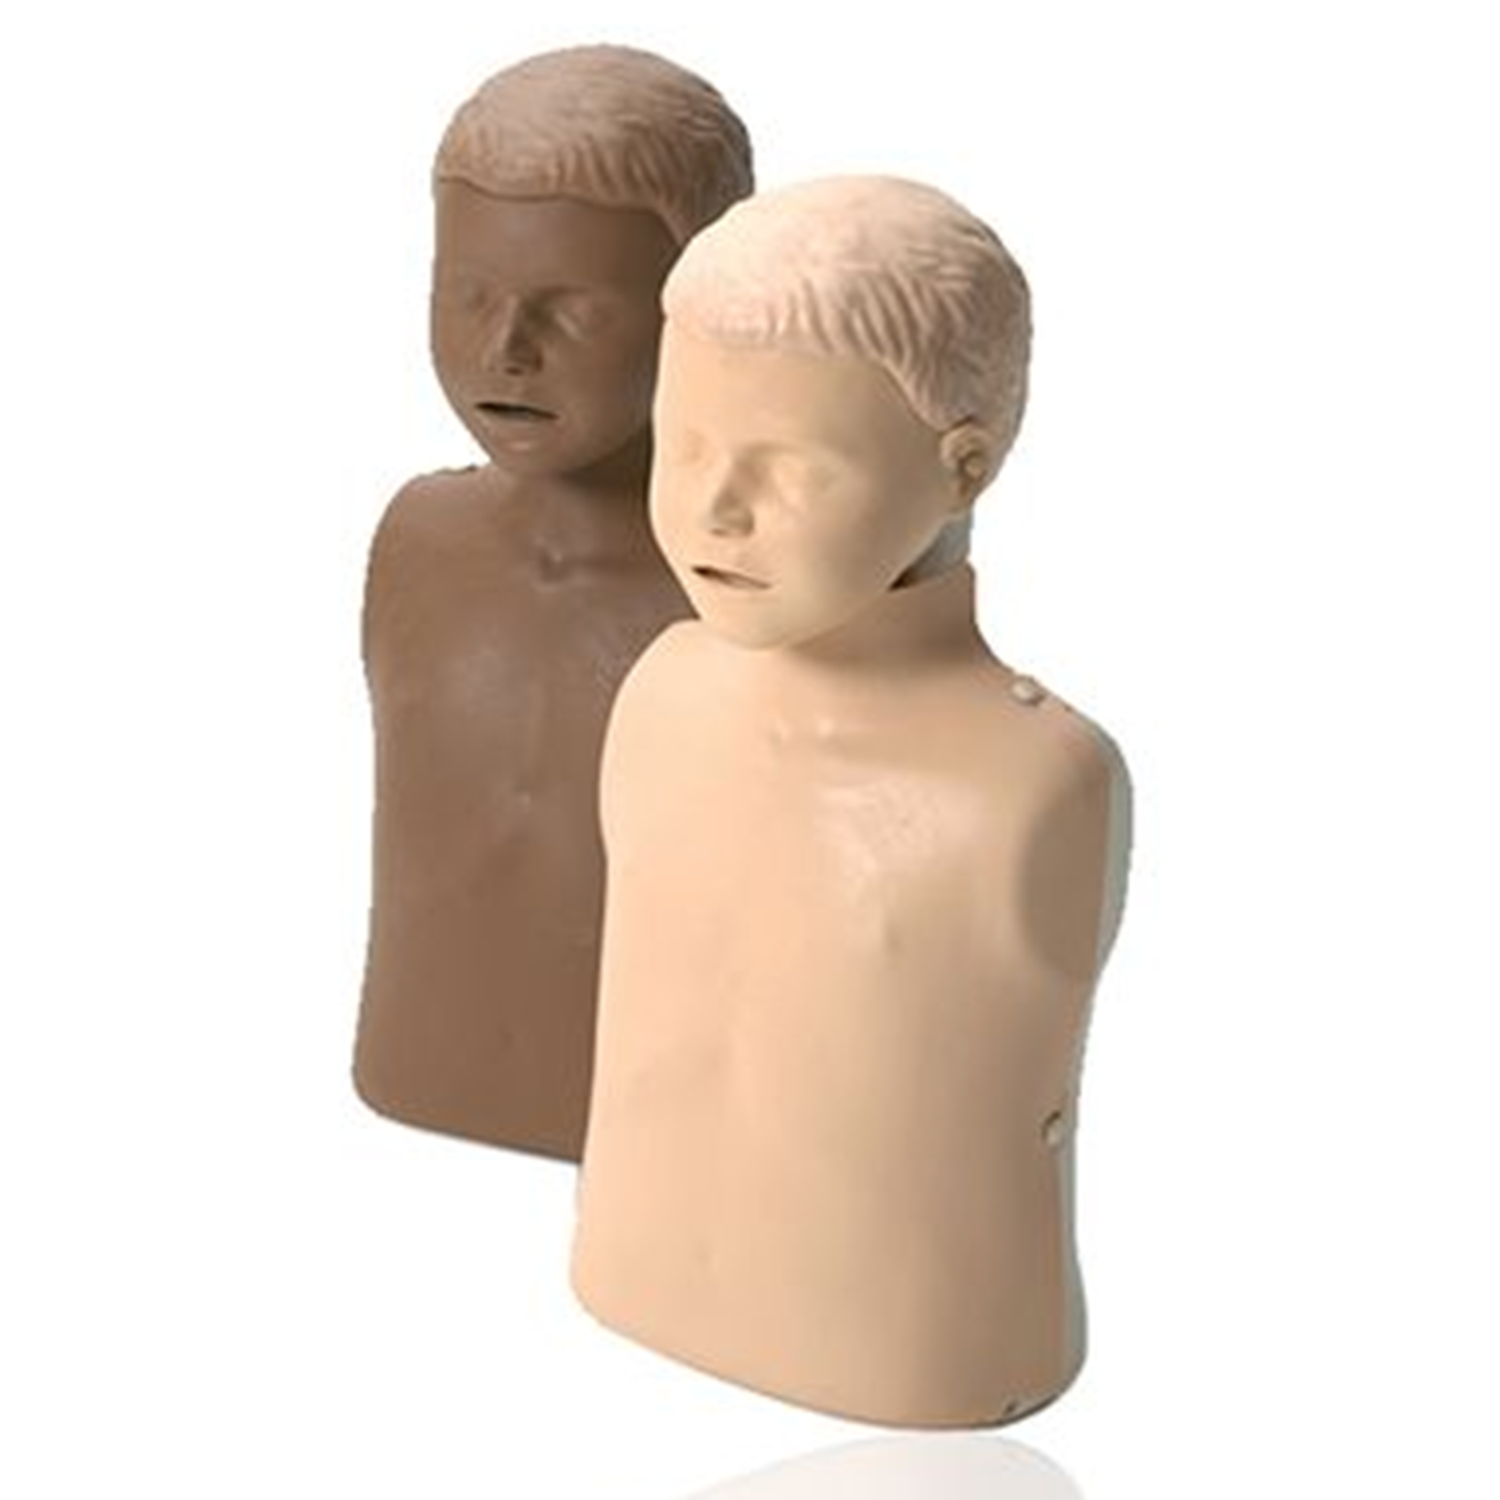 Little Junior Dark Skin Child Mannequin CPR Trainer